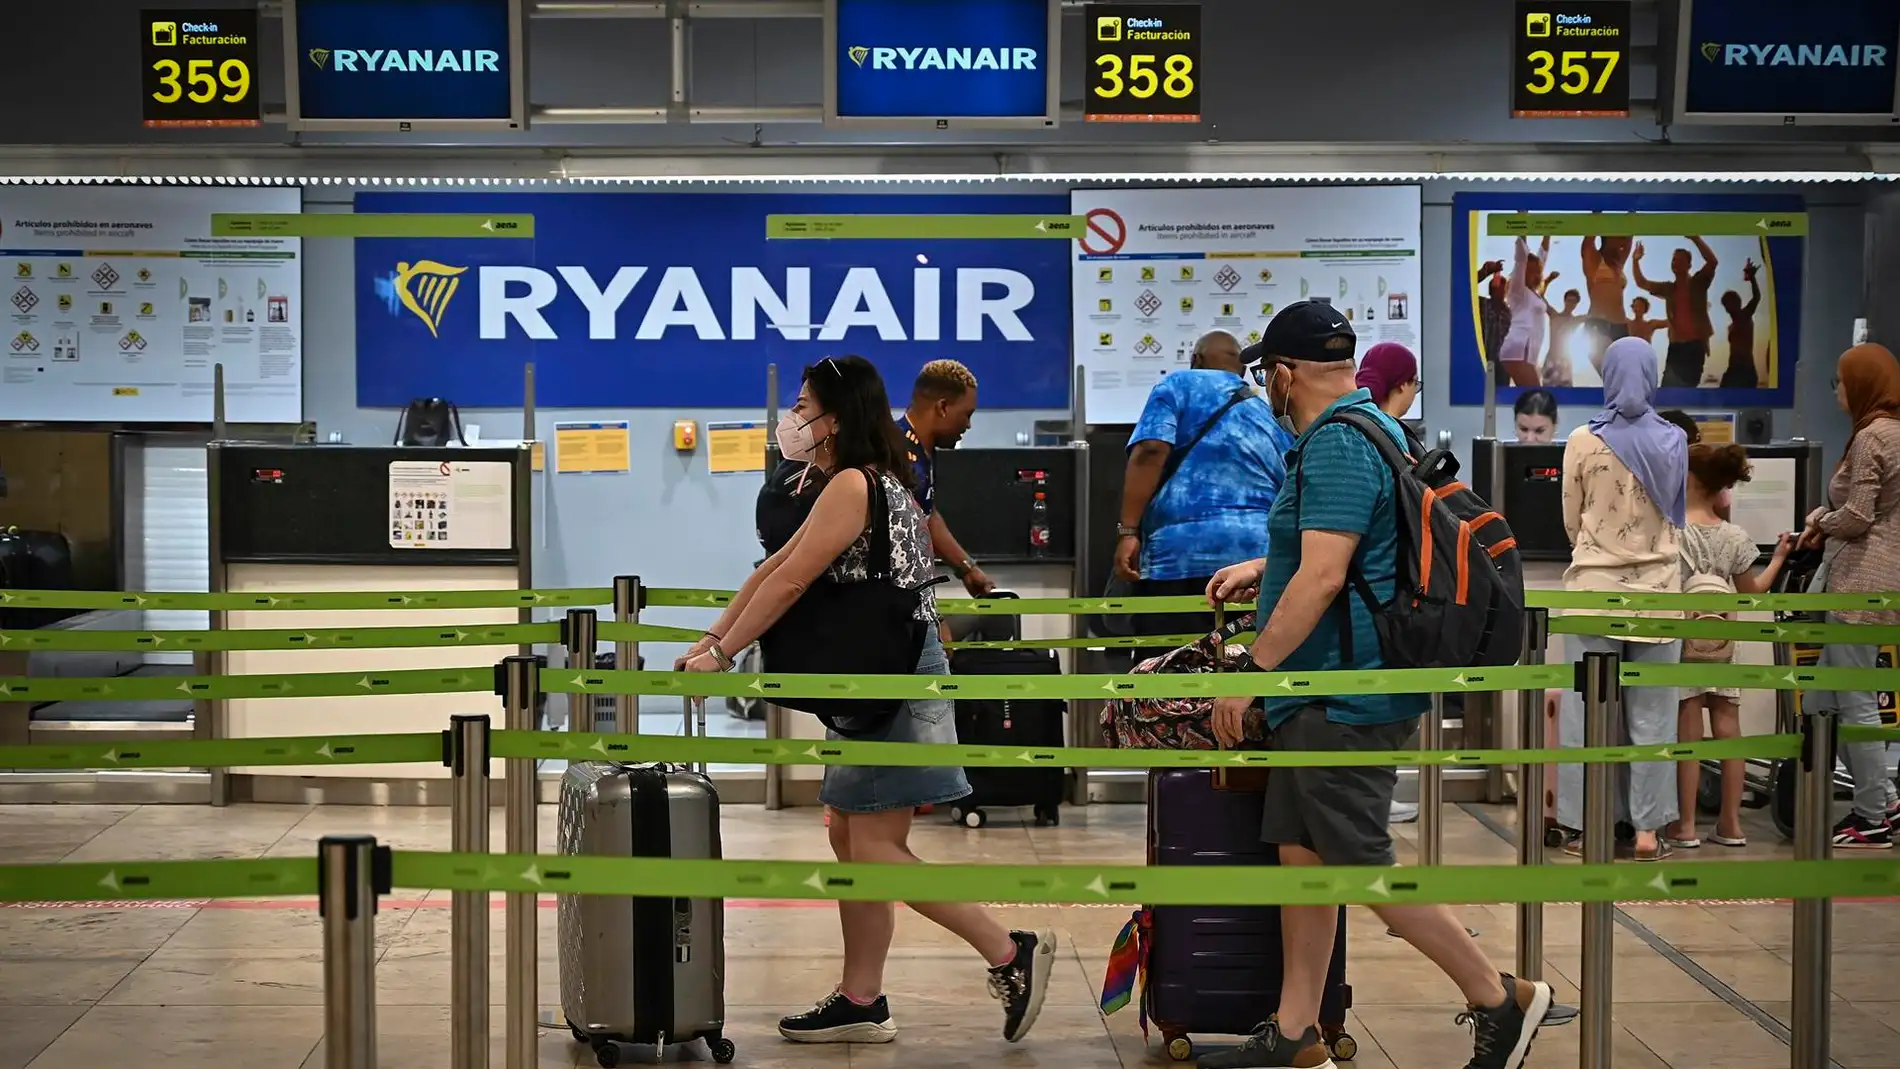 Huelga de Ryanair en julio: lista vuelos afectados, días y aeropuertos Onda Cero Radio